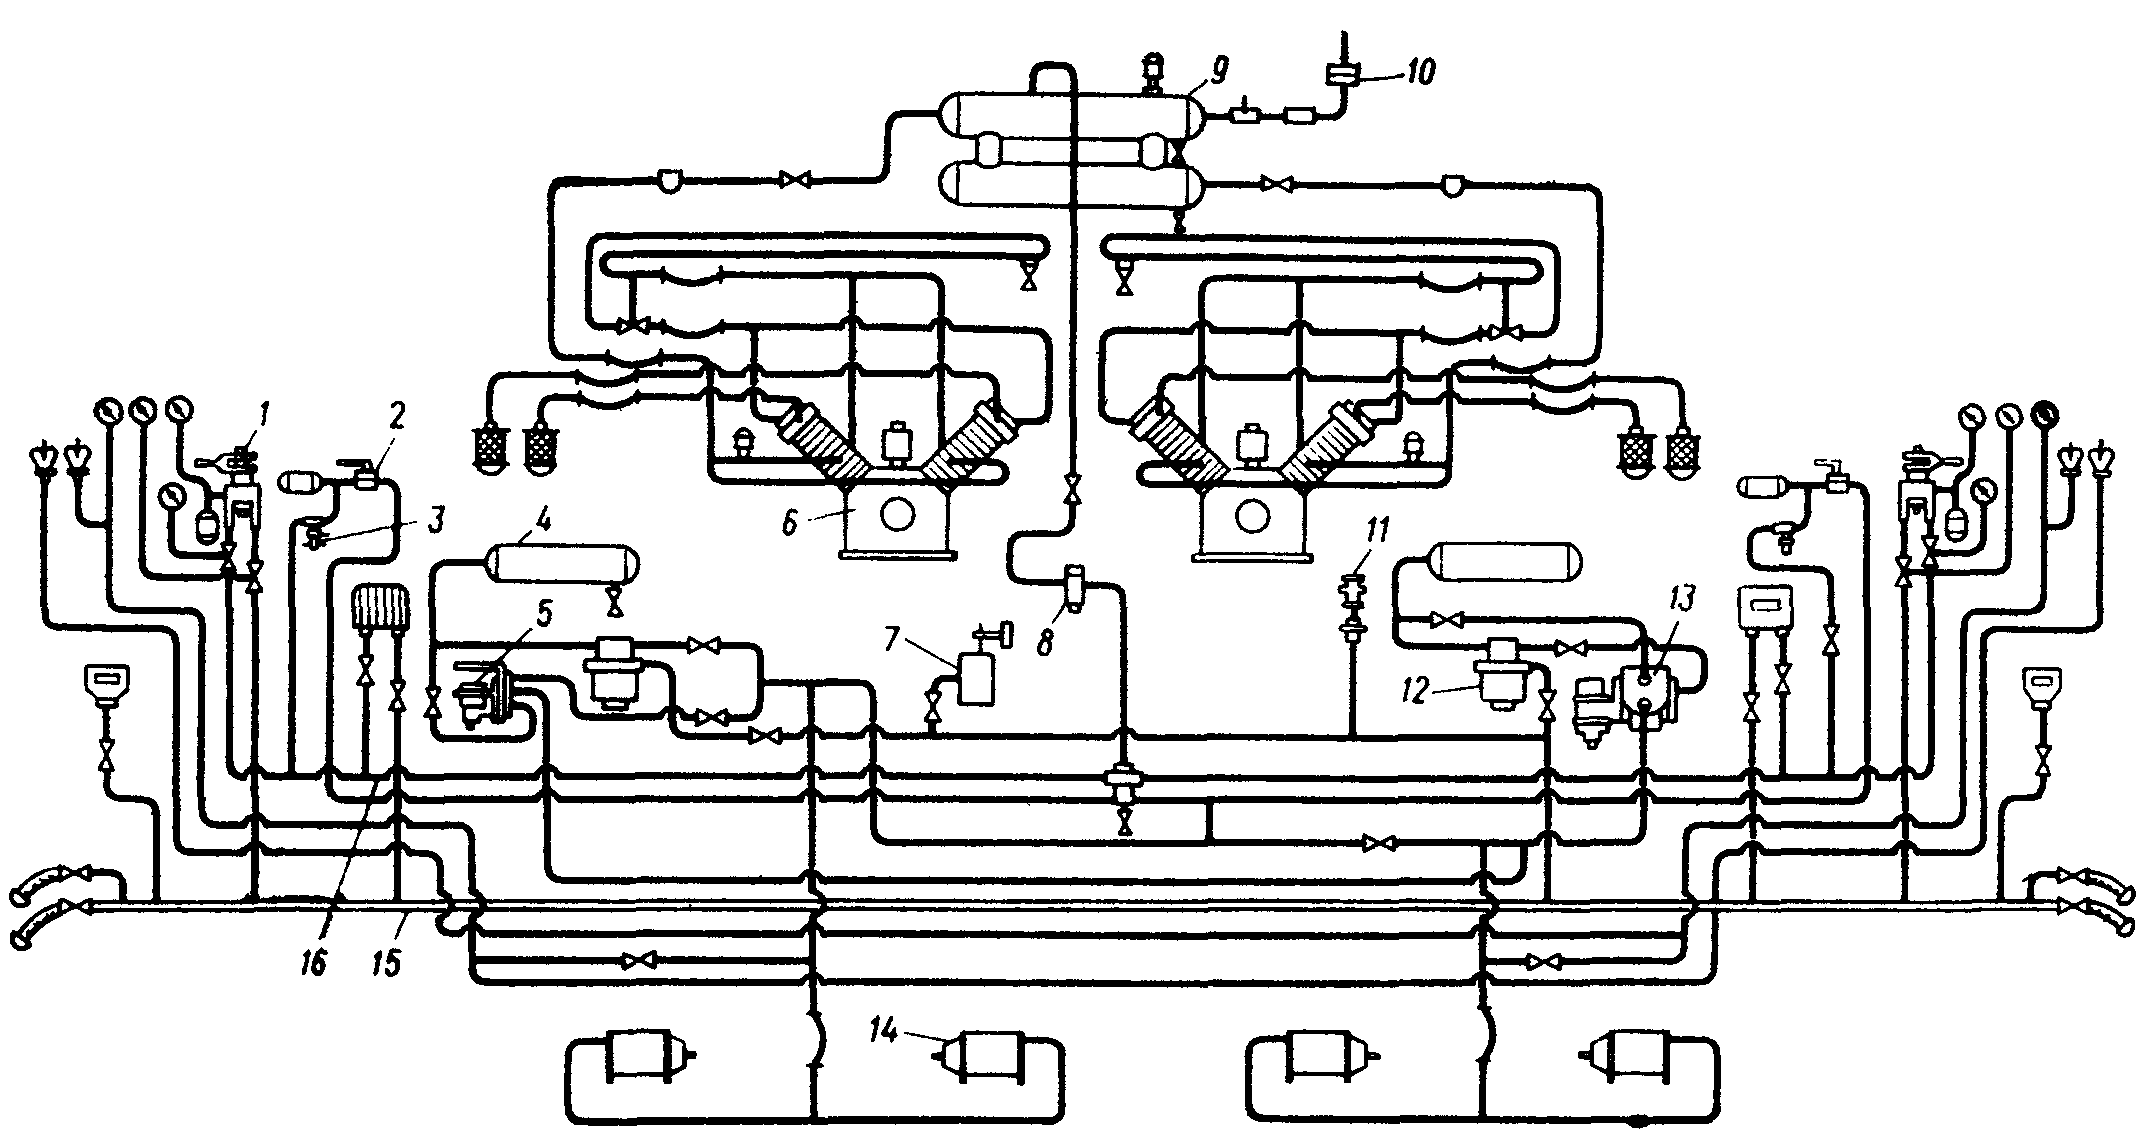 Схема тормозного оборудования электровозов ЧС1, ЧС3